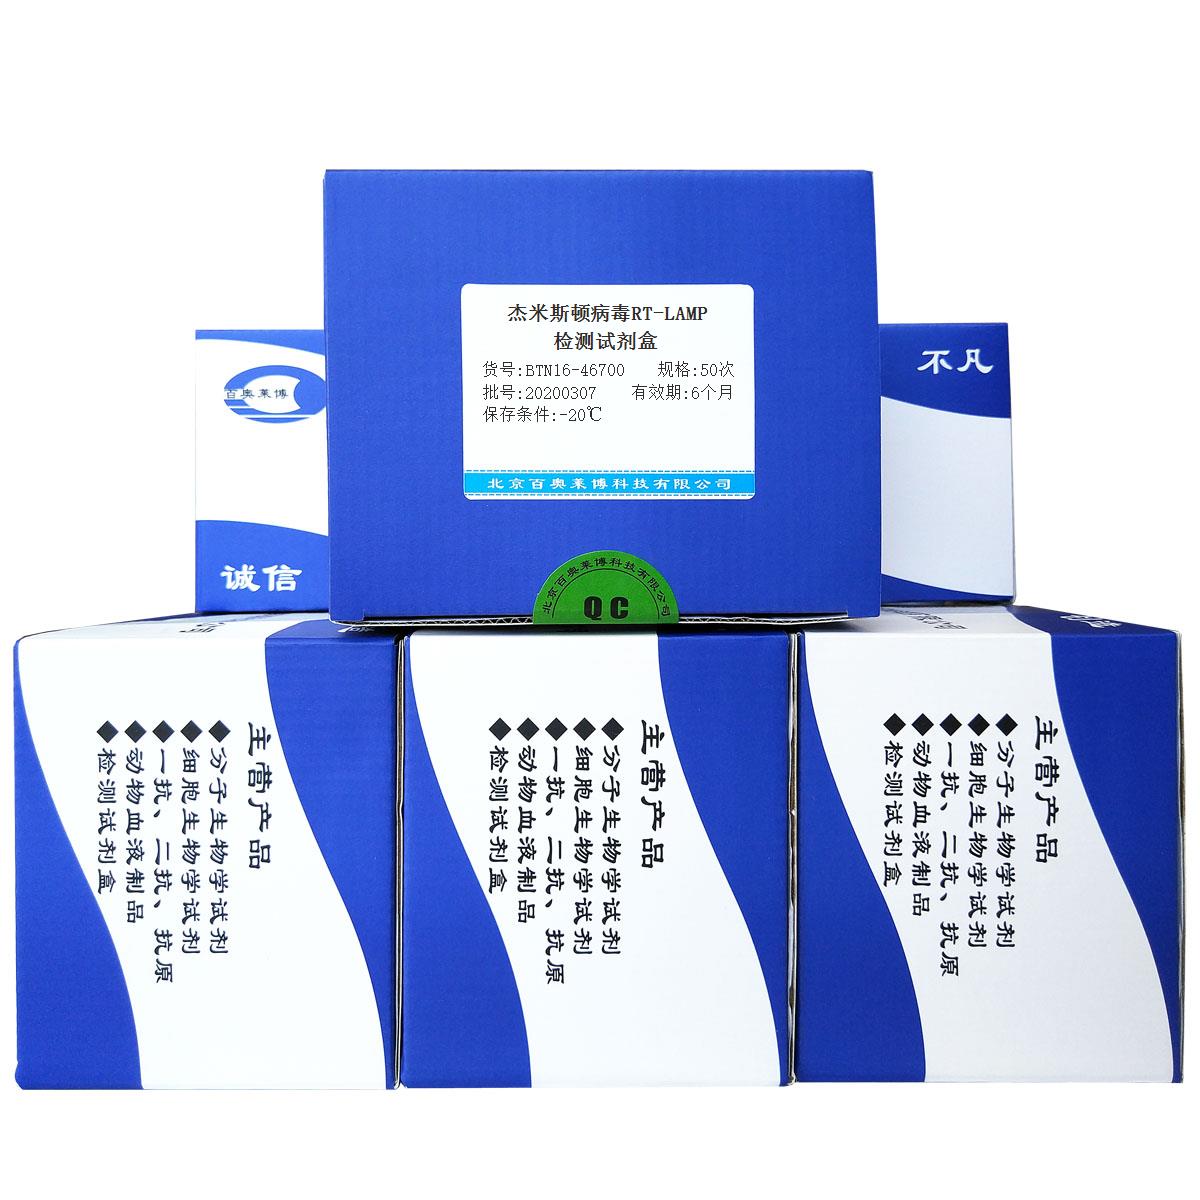 杰米斯顿病毒RT-LAMP检测试剂盒北京价格